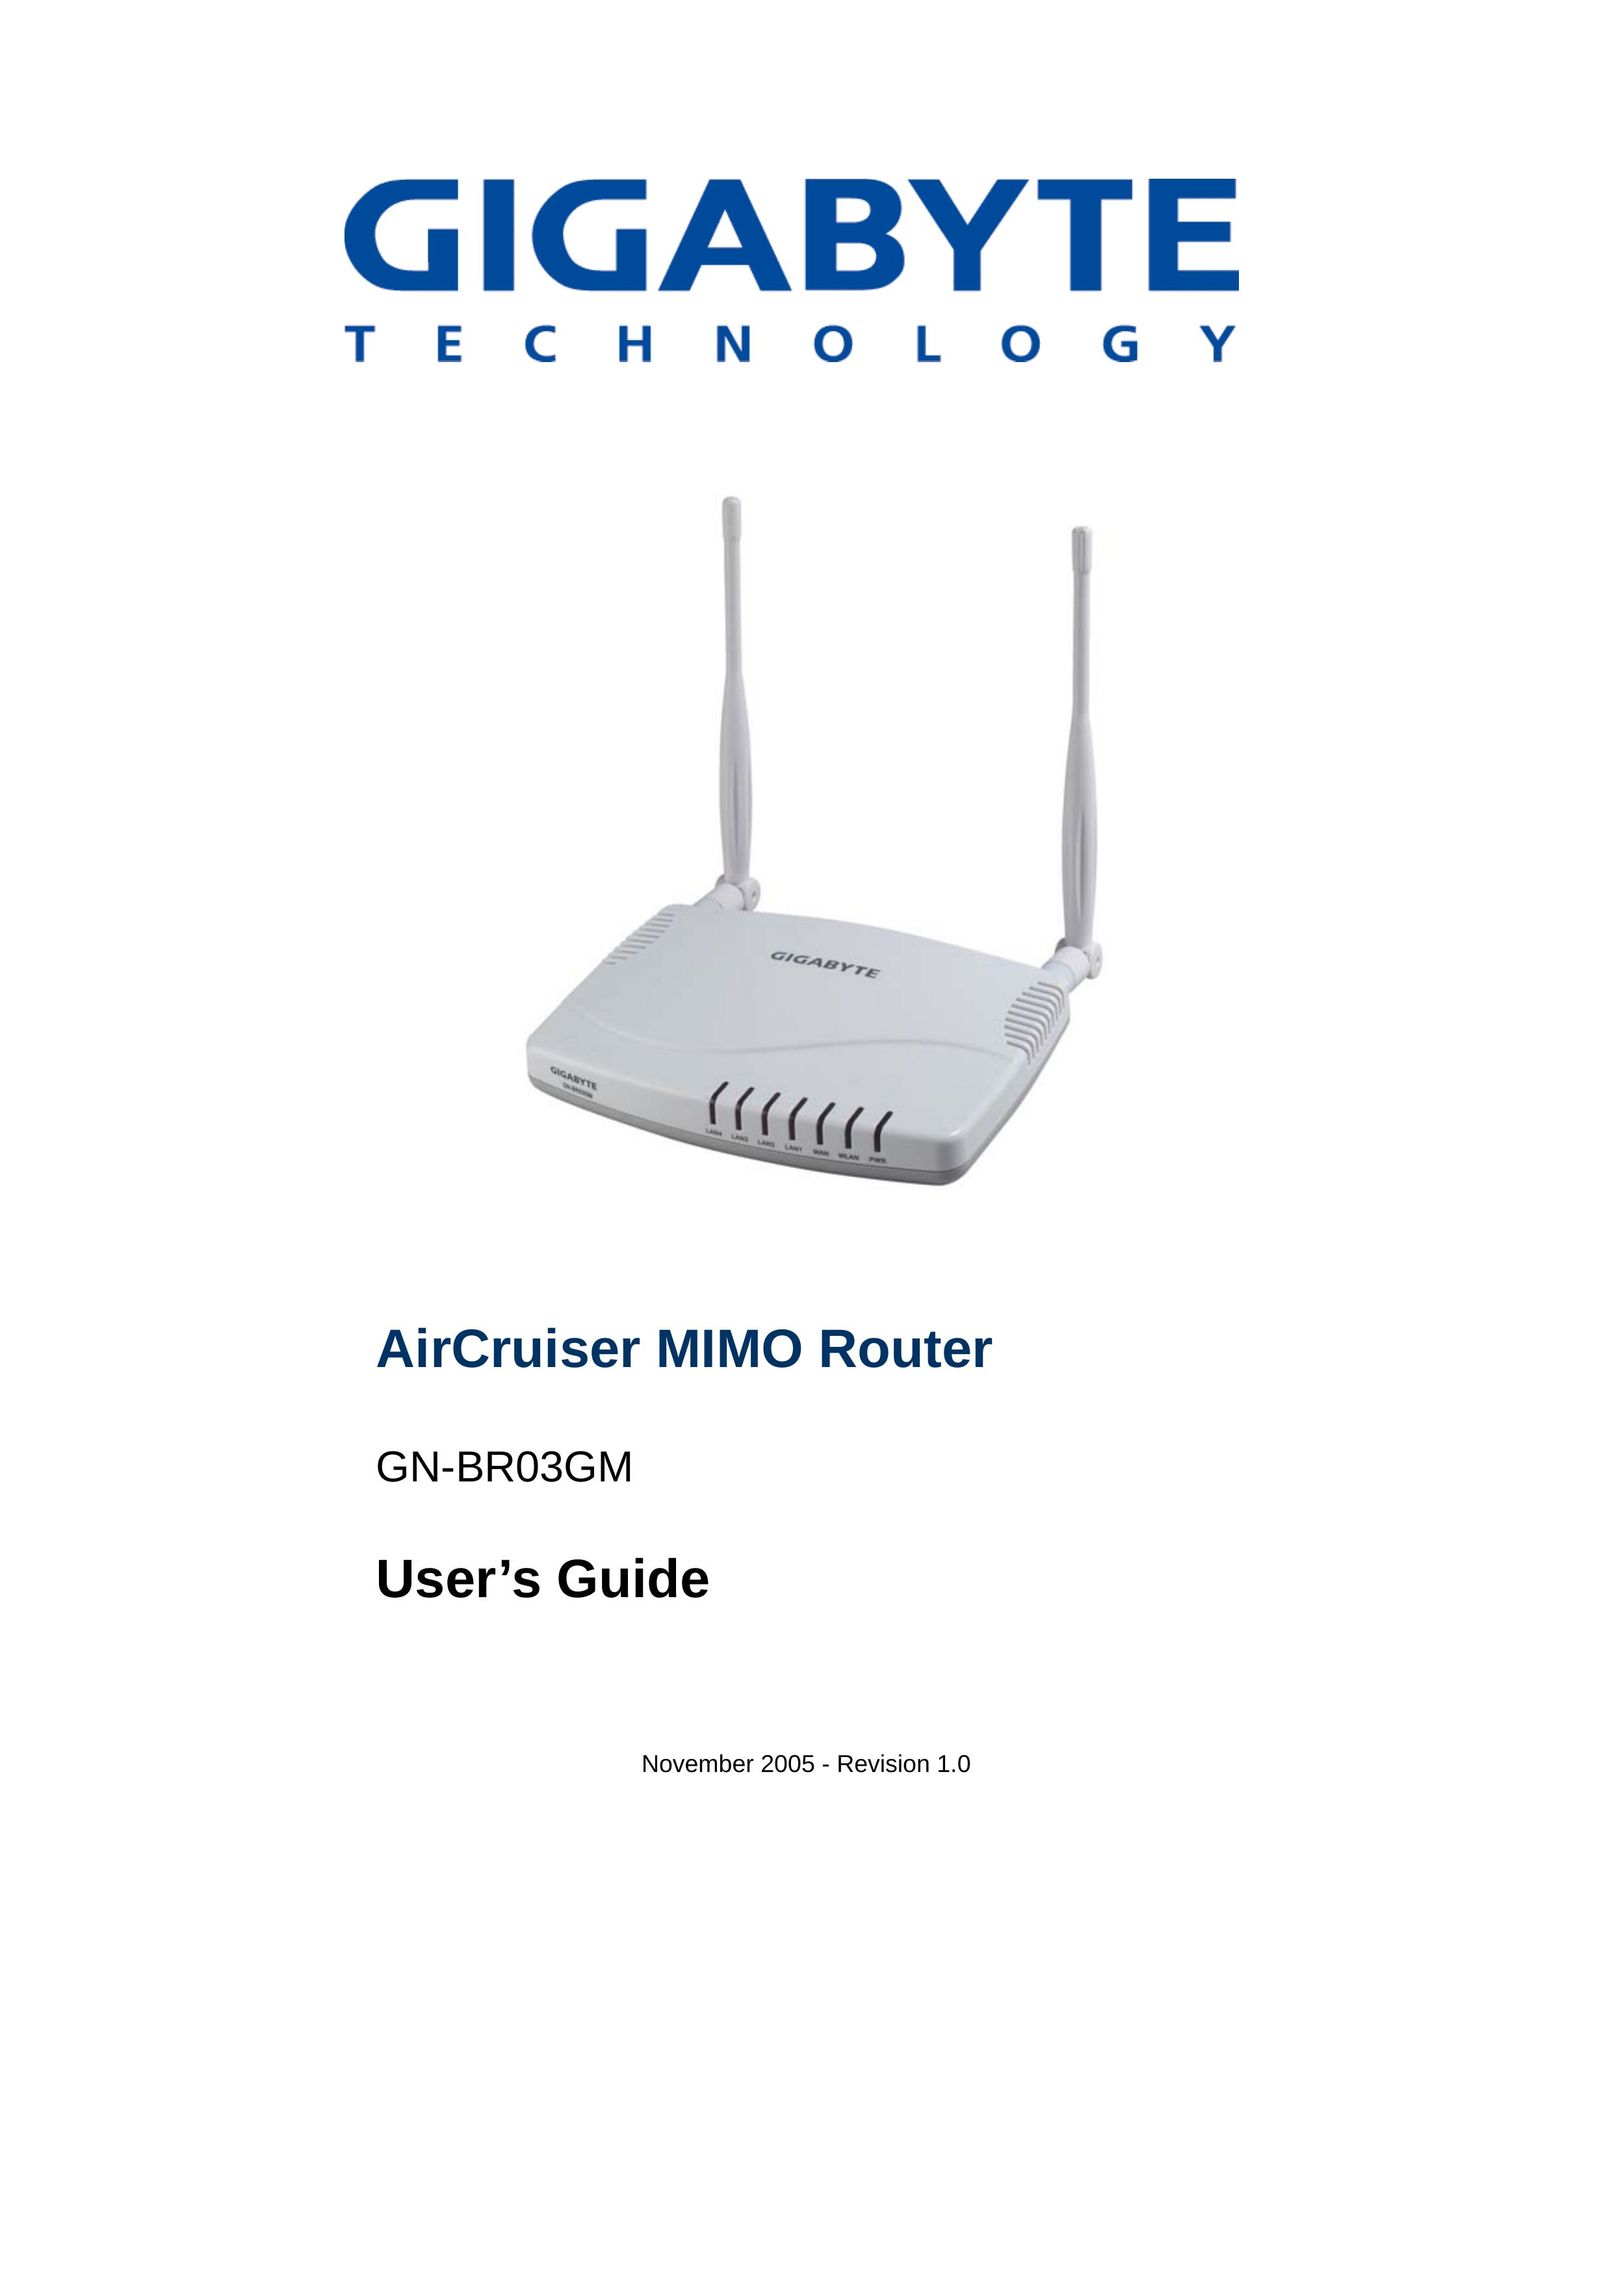 Gigabyte GN-BR03GM Network Router User Manual